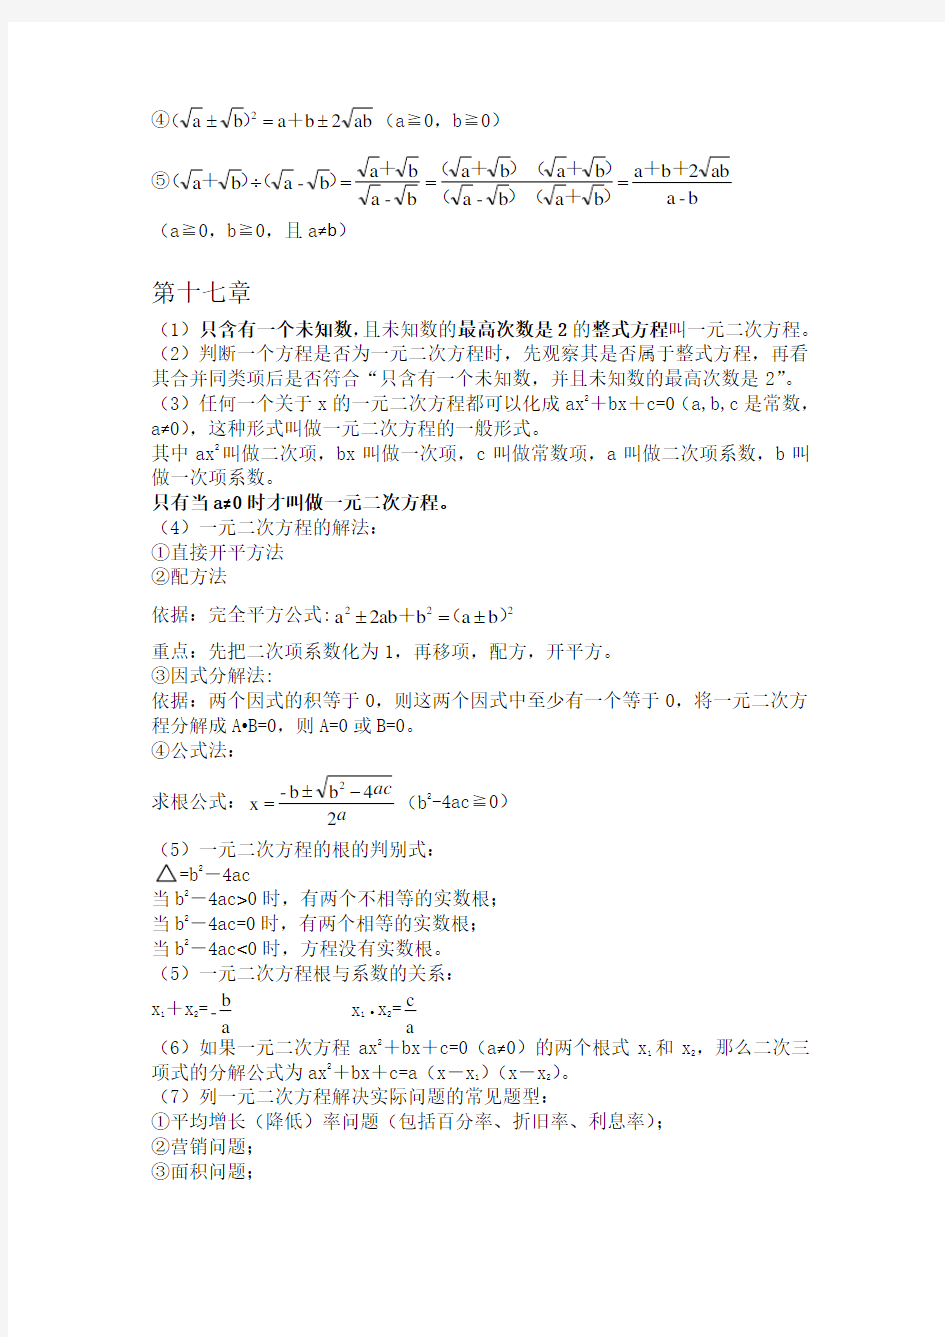 沪教版初中数学八年级第一学期8A 知识点总结(全)